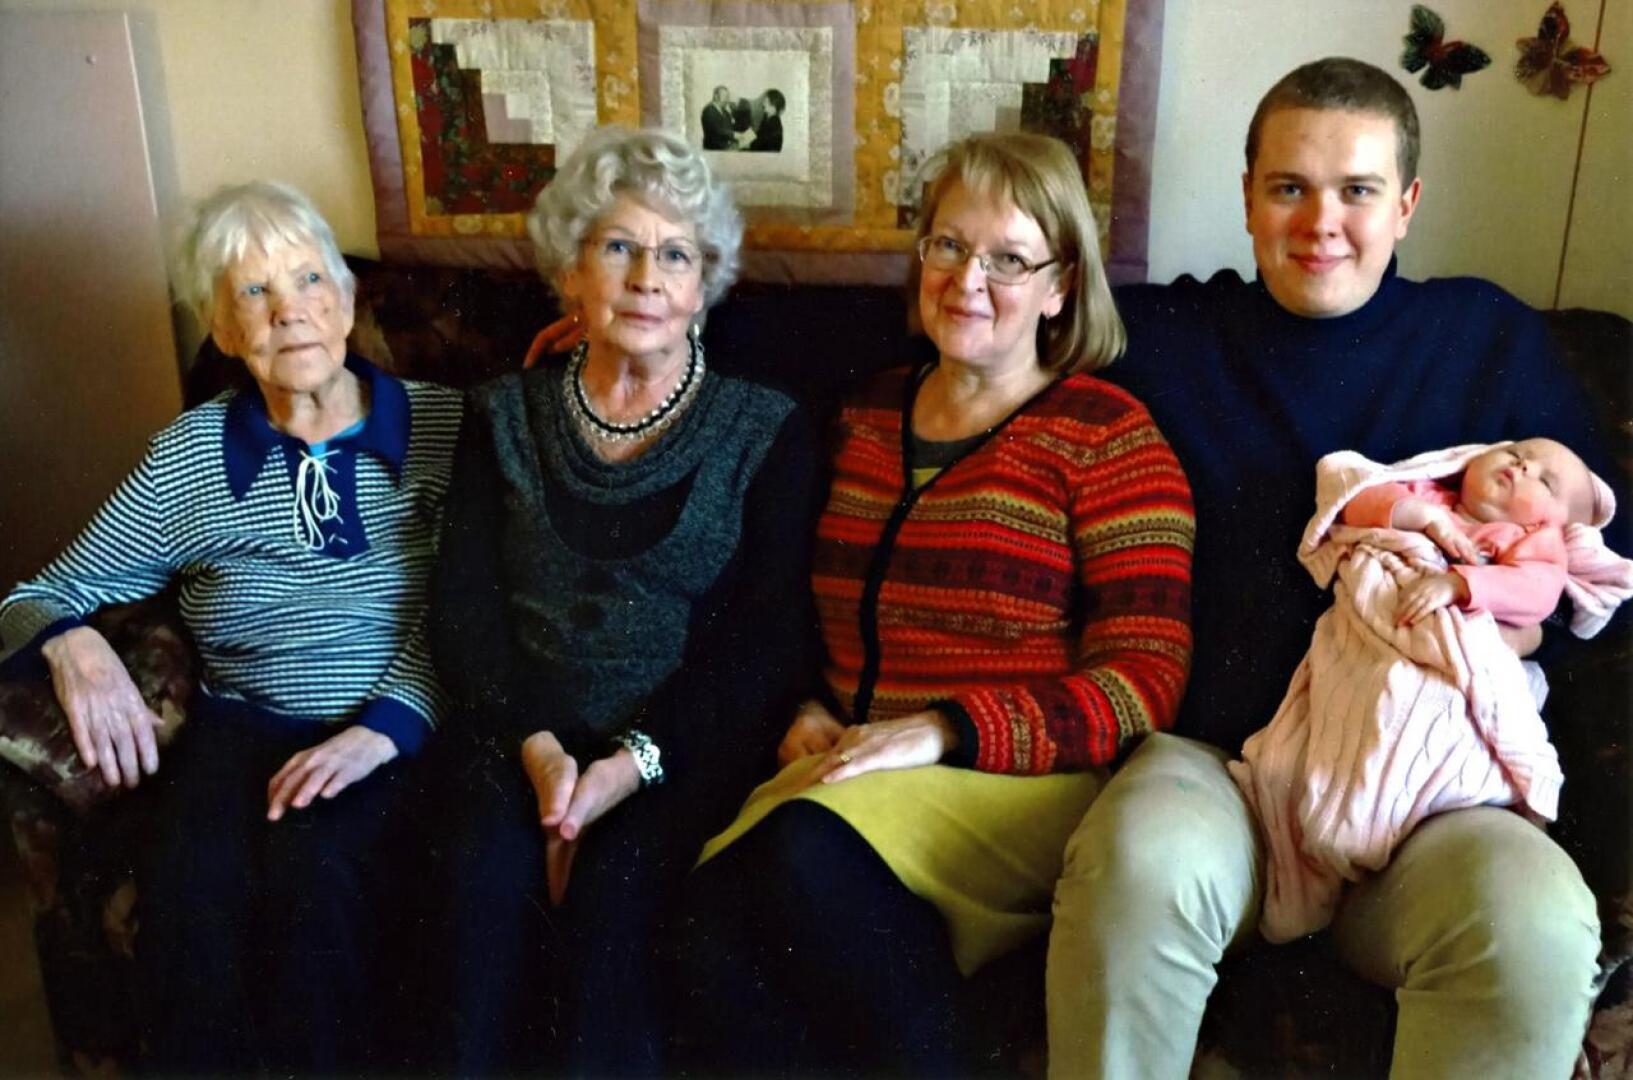 Humalojan vanhimman, Alli Hannosen katon alla kokoontui viisi sukupolvea joulukuussa 2018. Kuvassa 93-vuotias Alli Hannonen, Marjatta Rosenqvist, Maarit Rosenqvist sekä Joel Vuori sylissään kahden kuukauden ikäinen Anni-vauva.